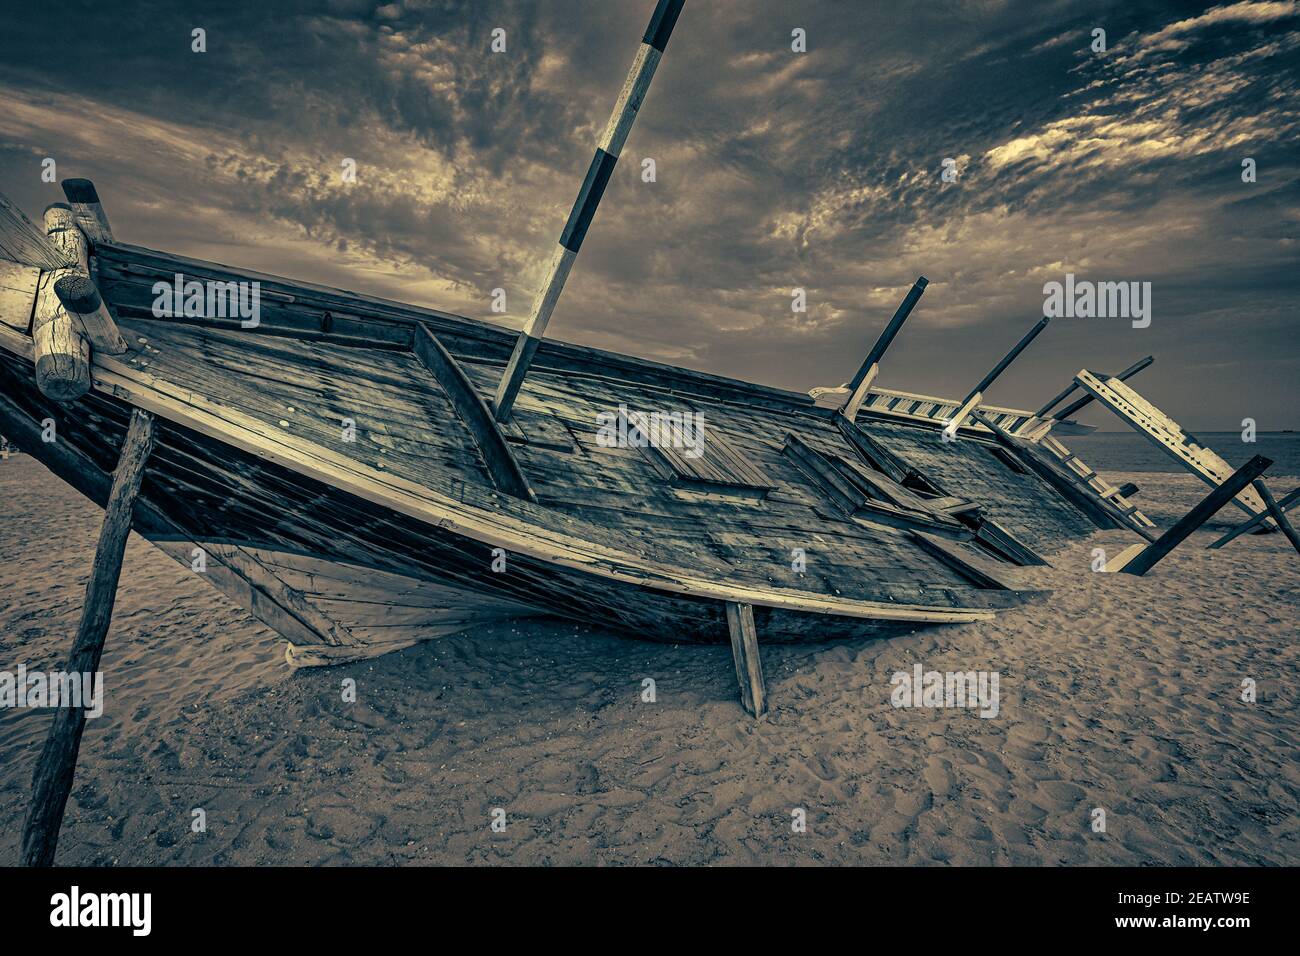 Vecchia barca araba in legno (dhow) intrecciata sulla spiaggia nera e bianco immagine ravvicinata con nuvole nel cielo Foto Stock